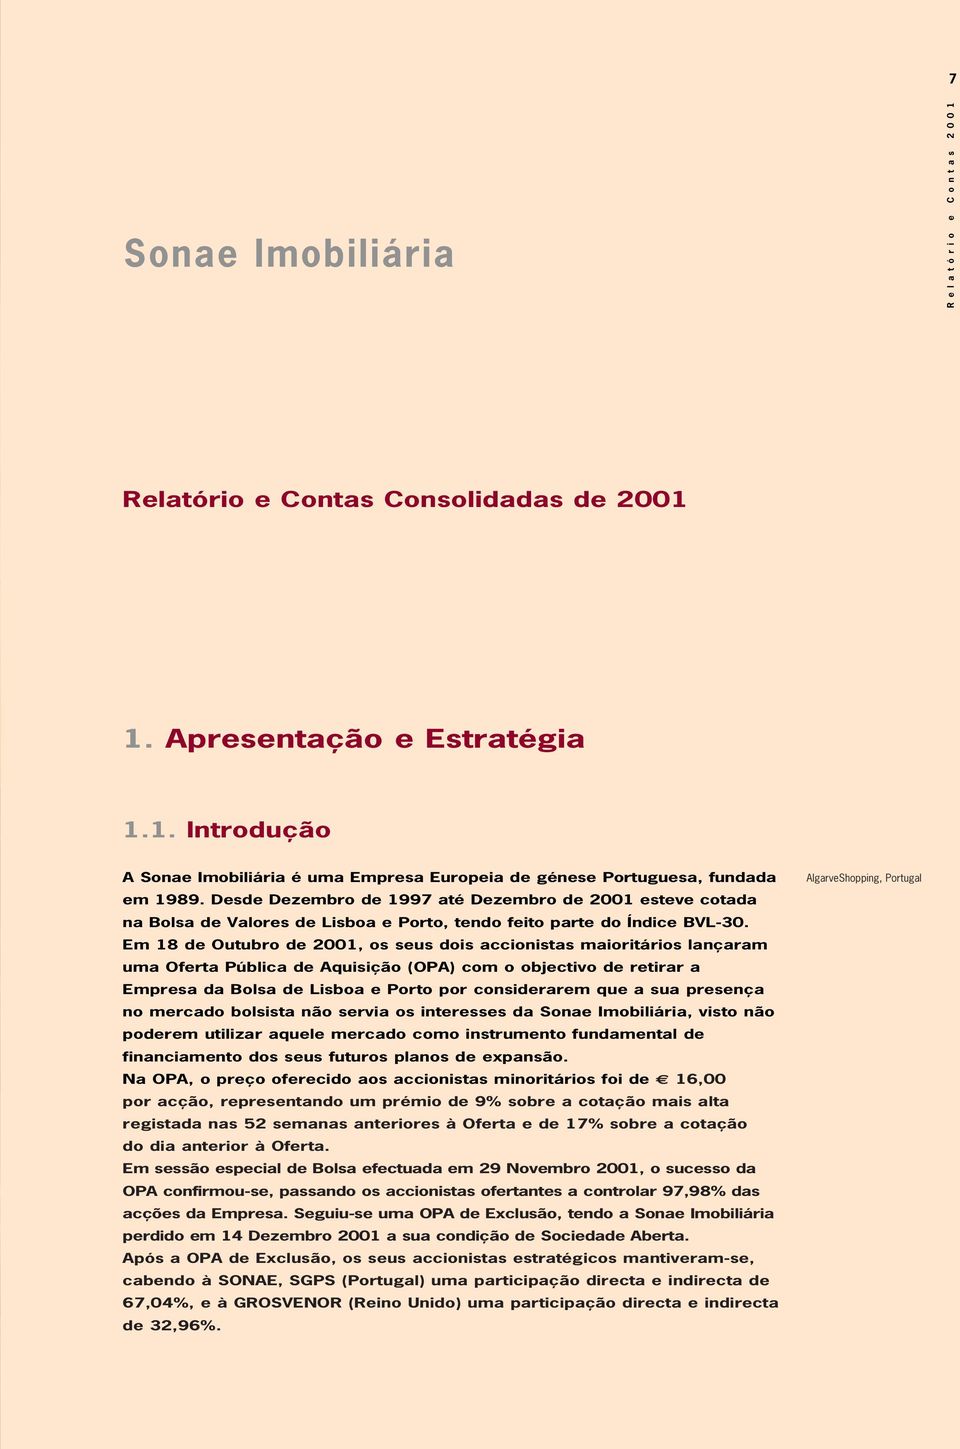 Em 18 de Outubro de 2001, os seus dois accionistas maioritários lançaram uma Oferta Pública de Aquisição (OPA) com o objectivo de retirar a Empresa da Bolsa de Lisboa e Porto por considerarem que a